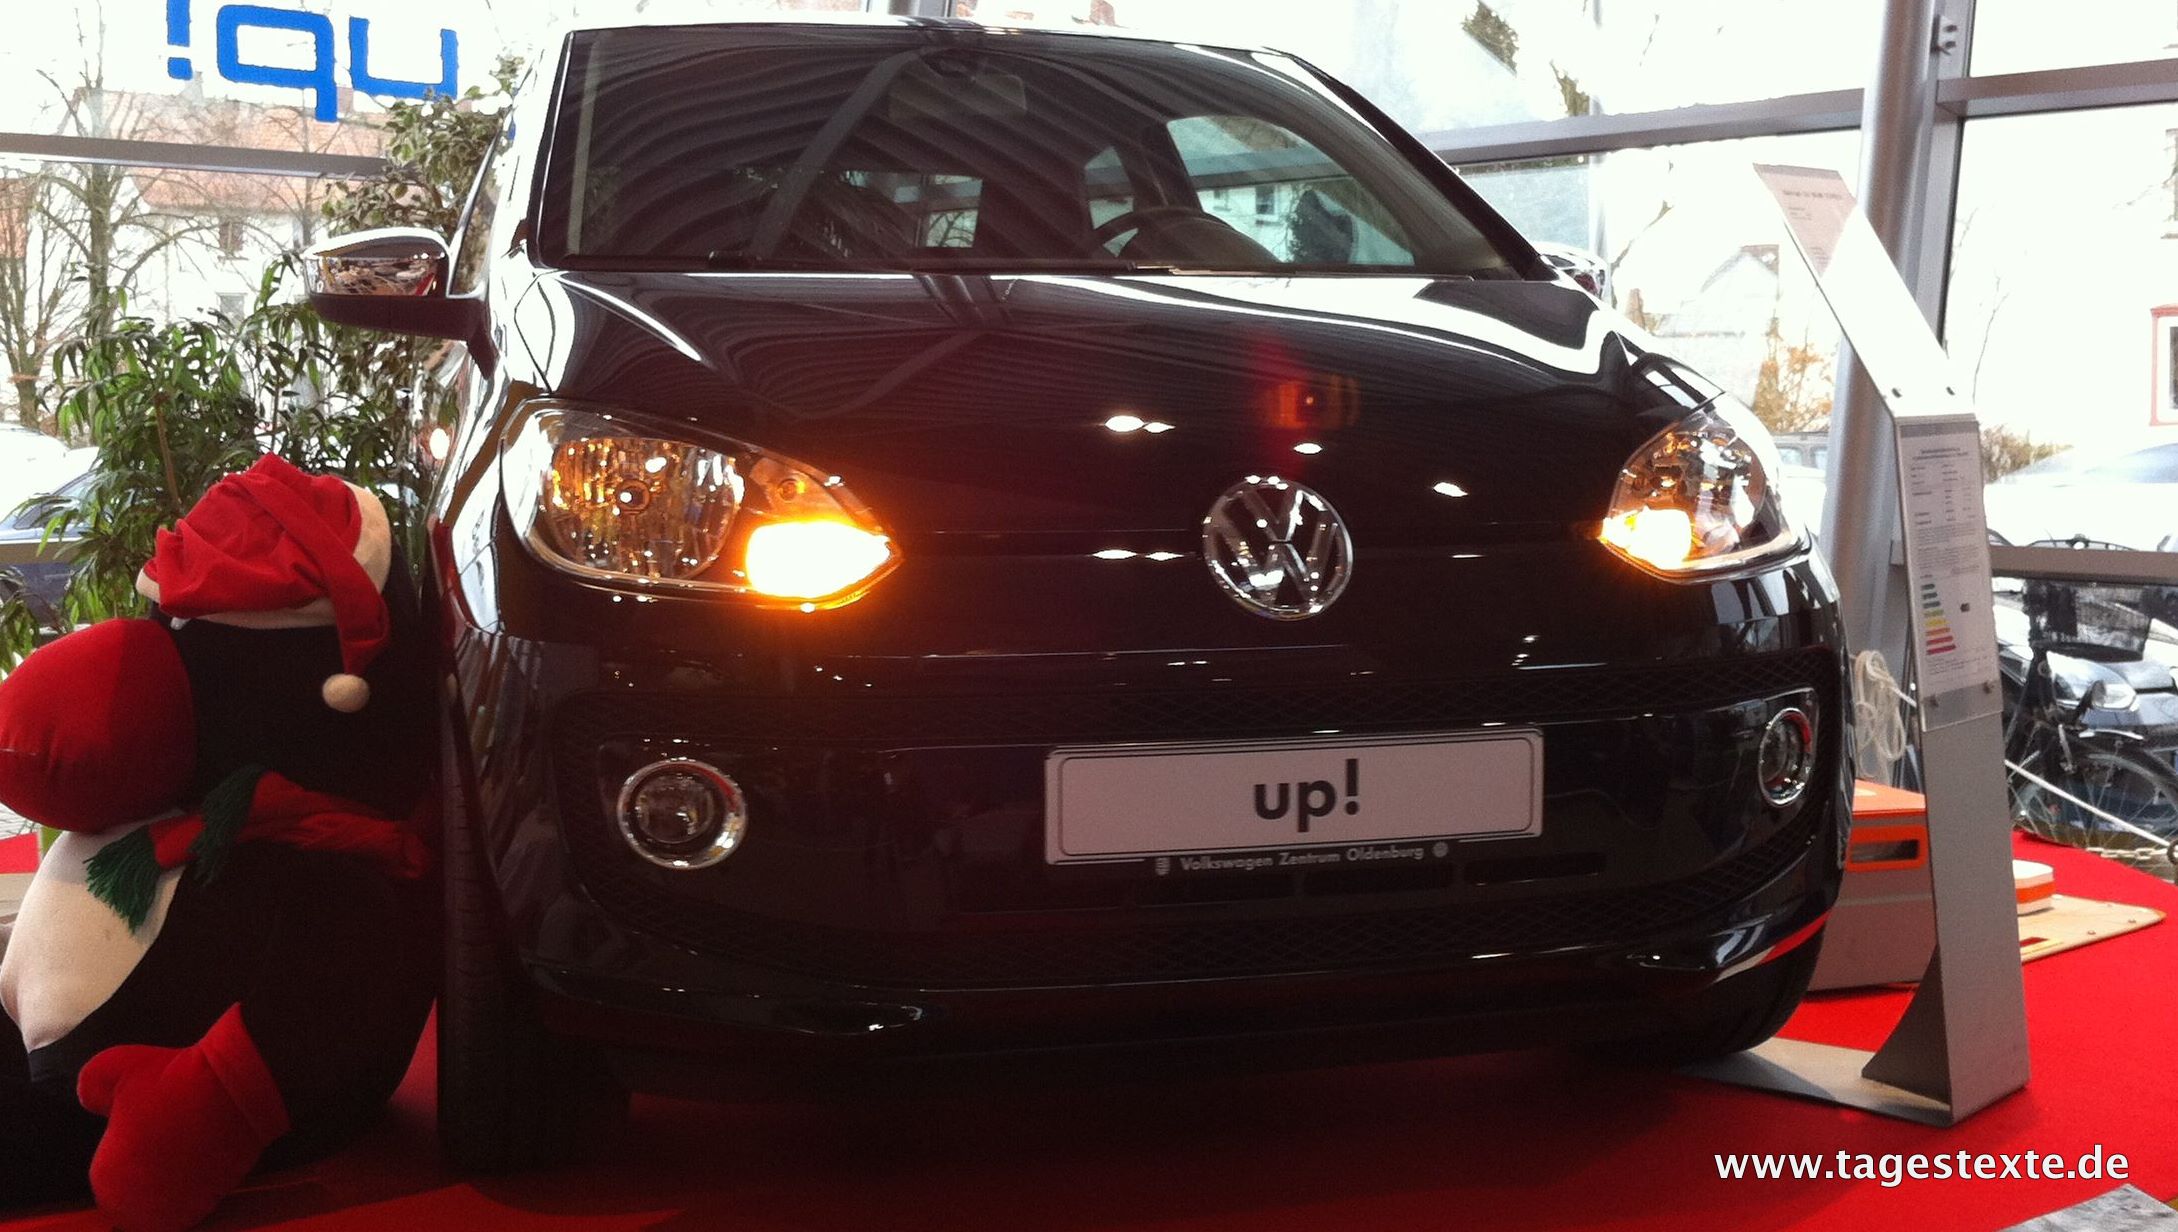 [Fotos] Der up! ist da! – Volkswagen präsentiert den neuen Cityflitzer